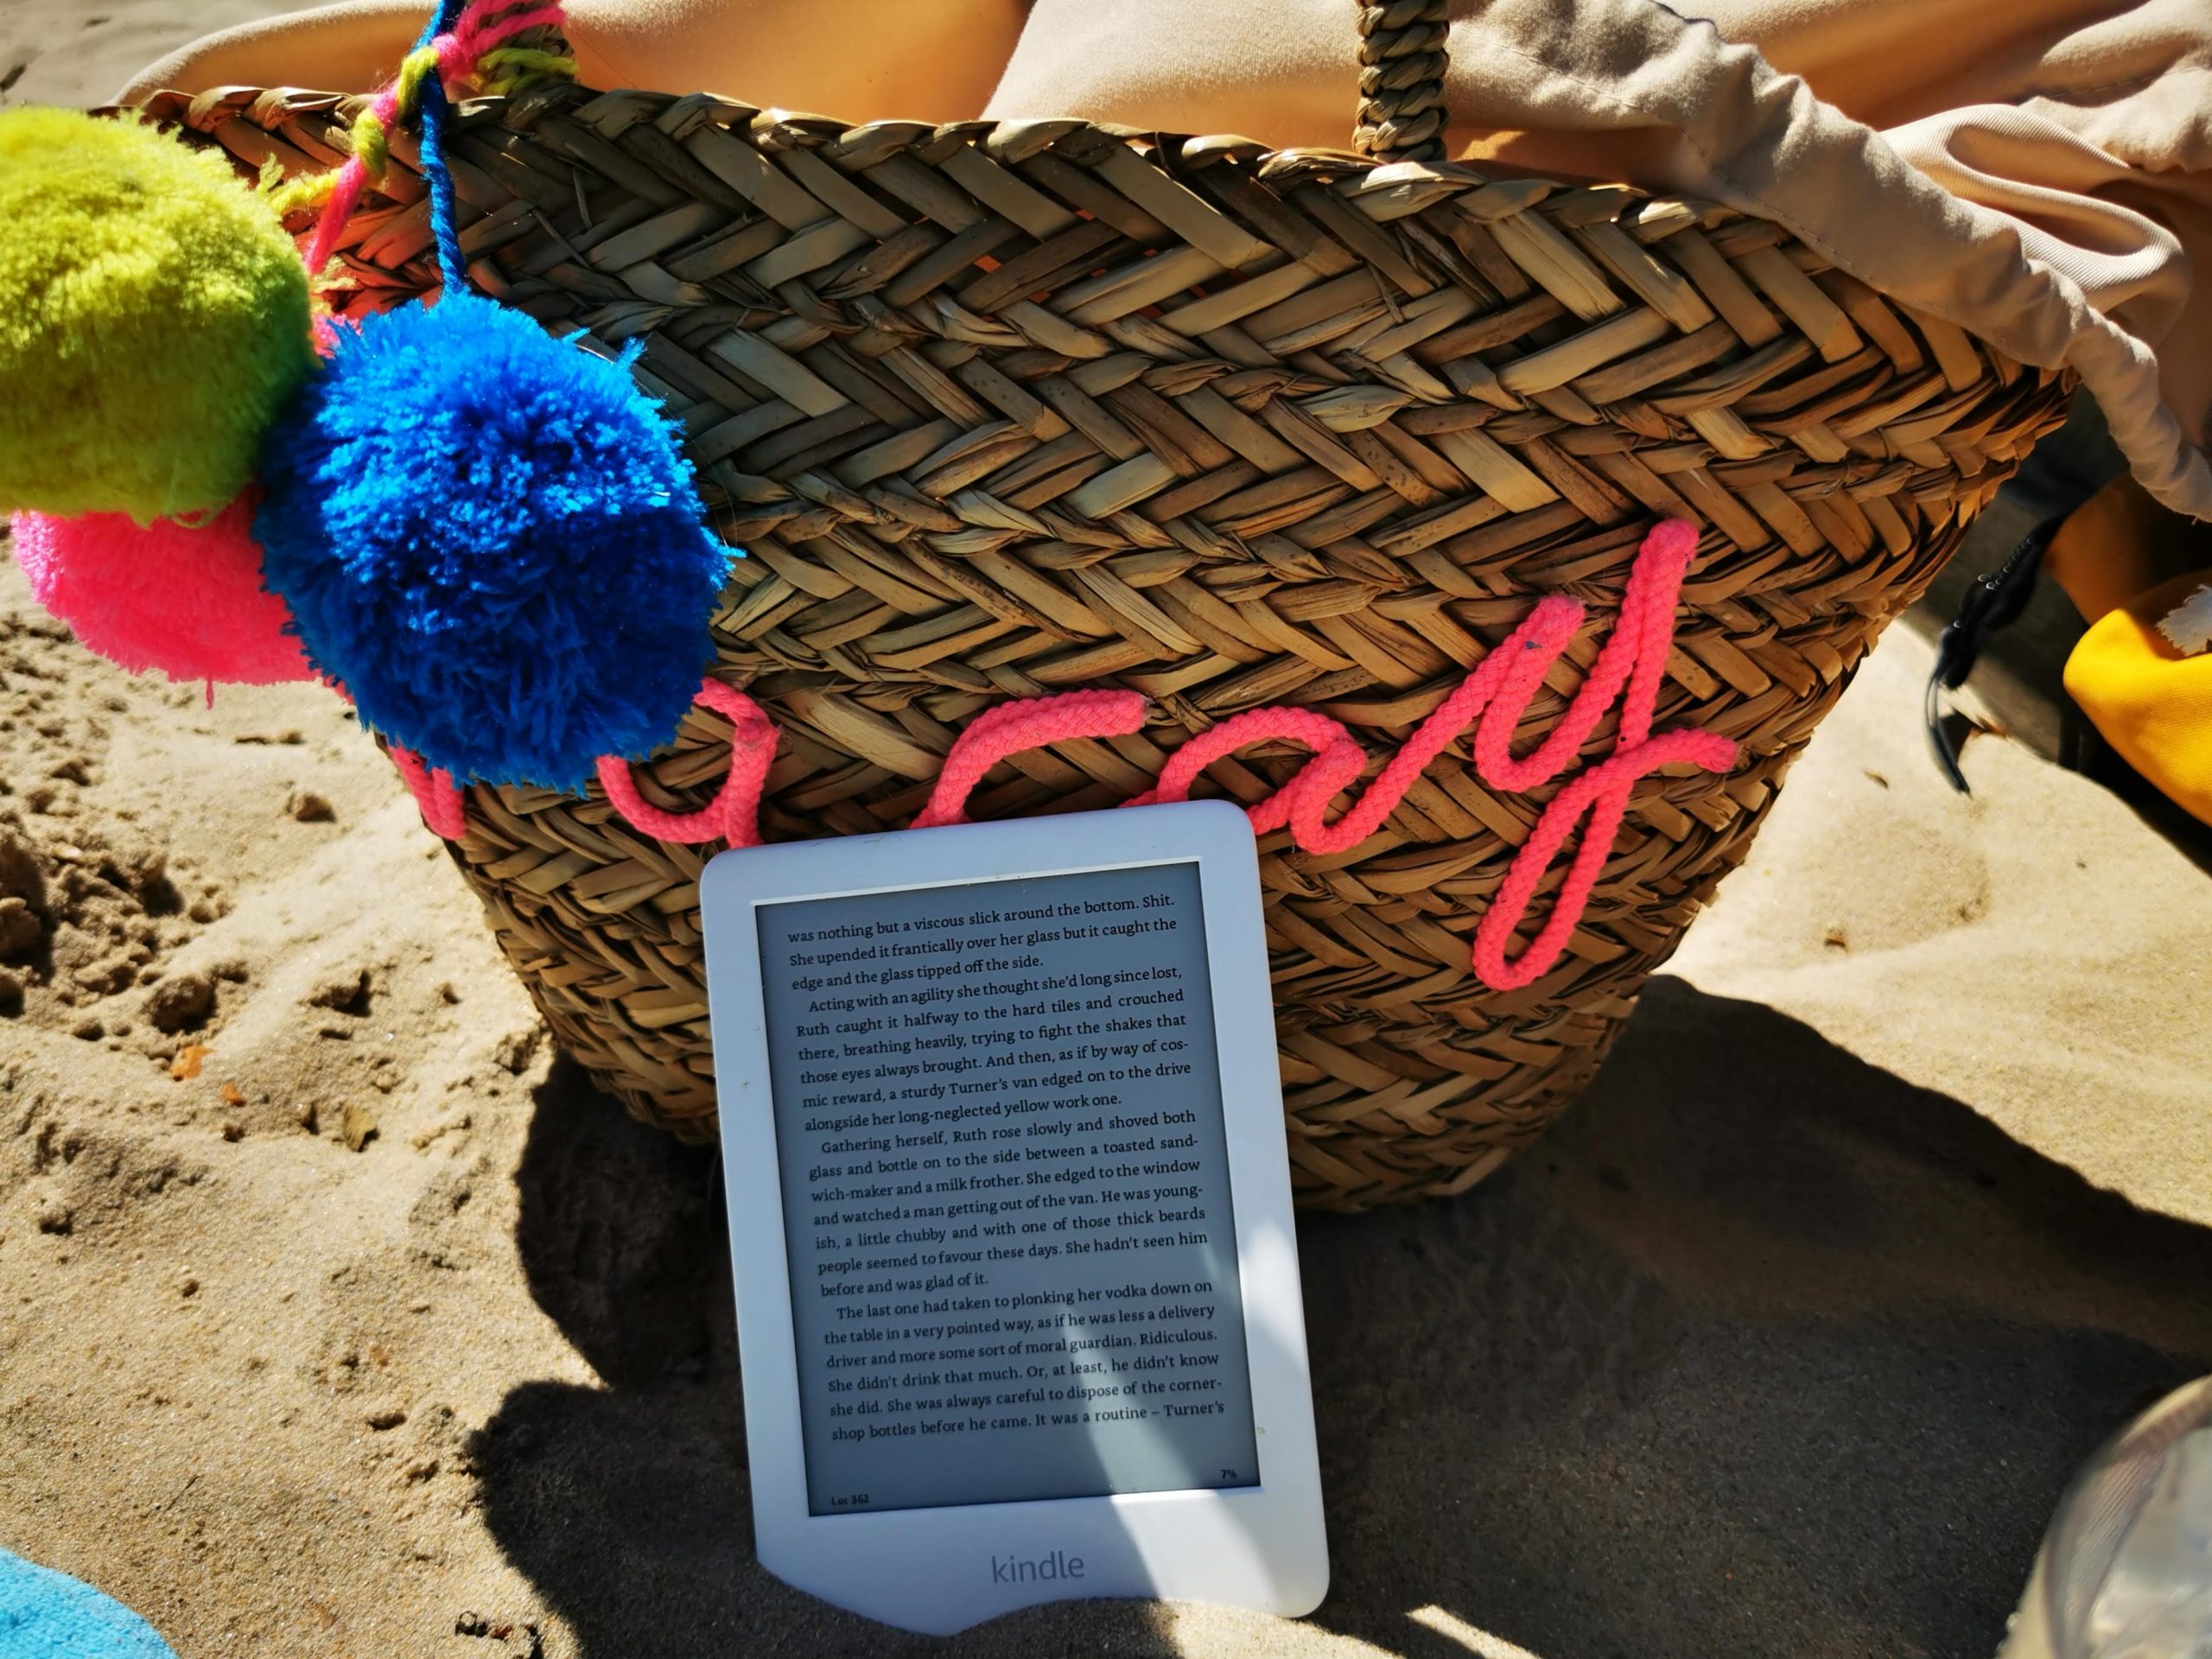 reading - kindle lent against beach bag on the sand